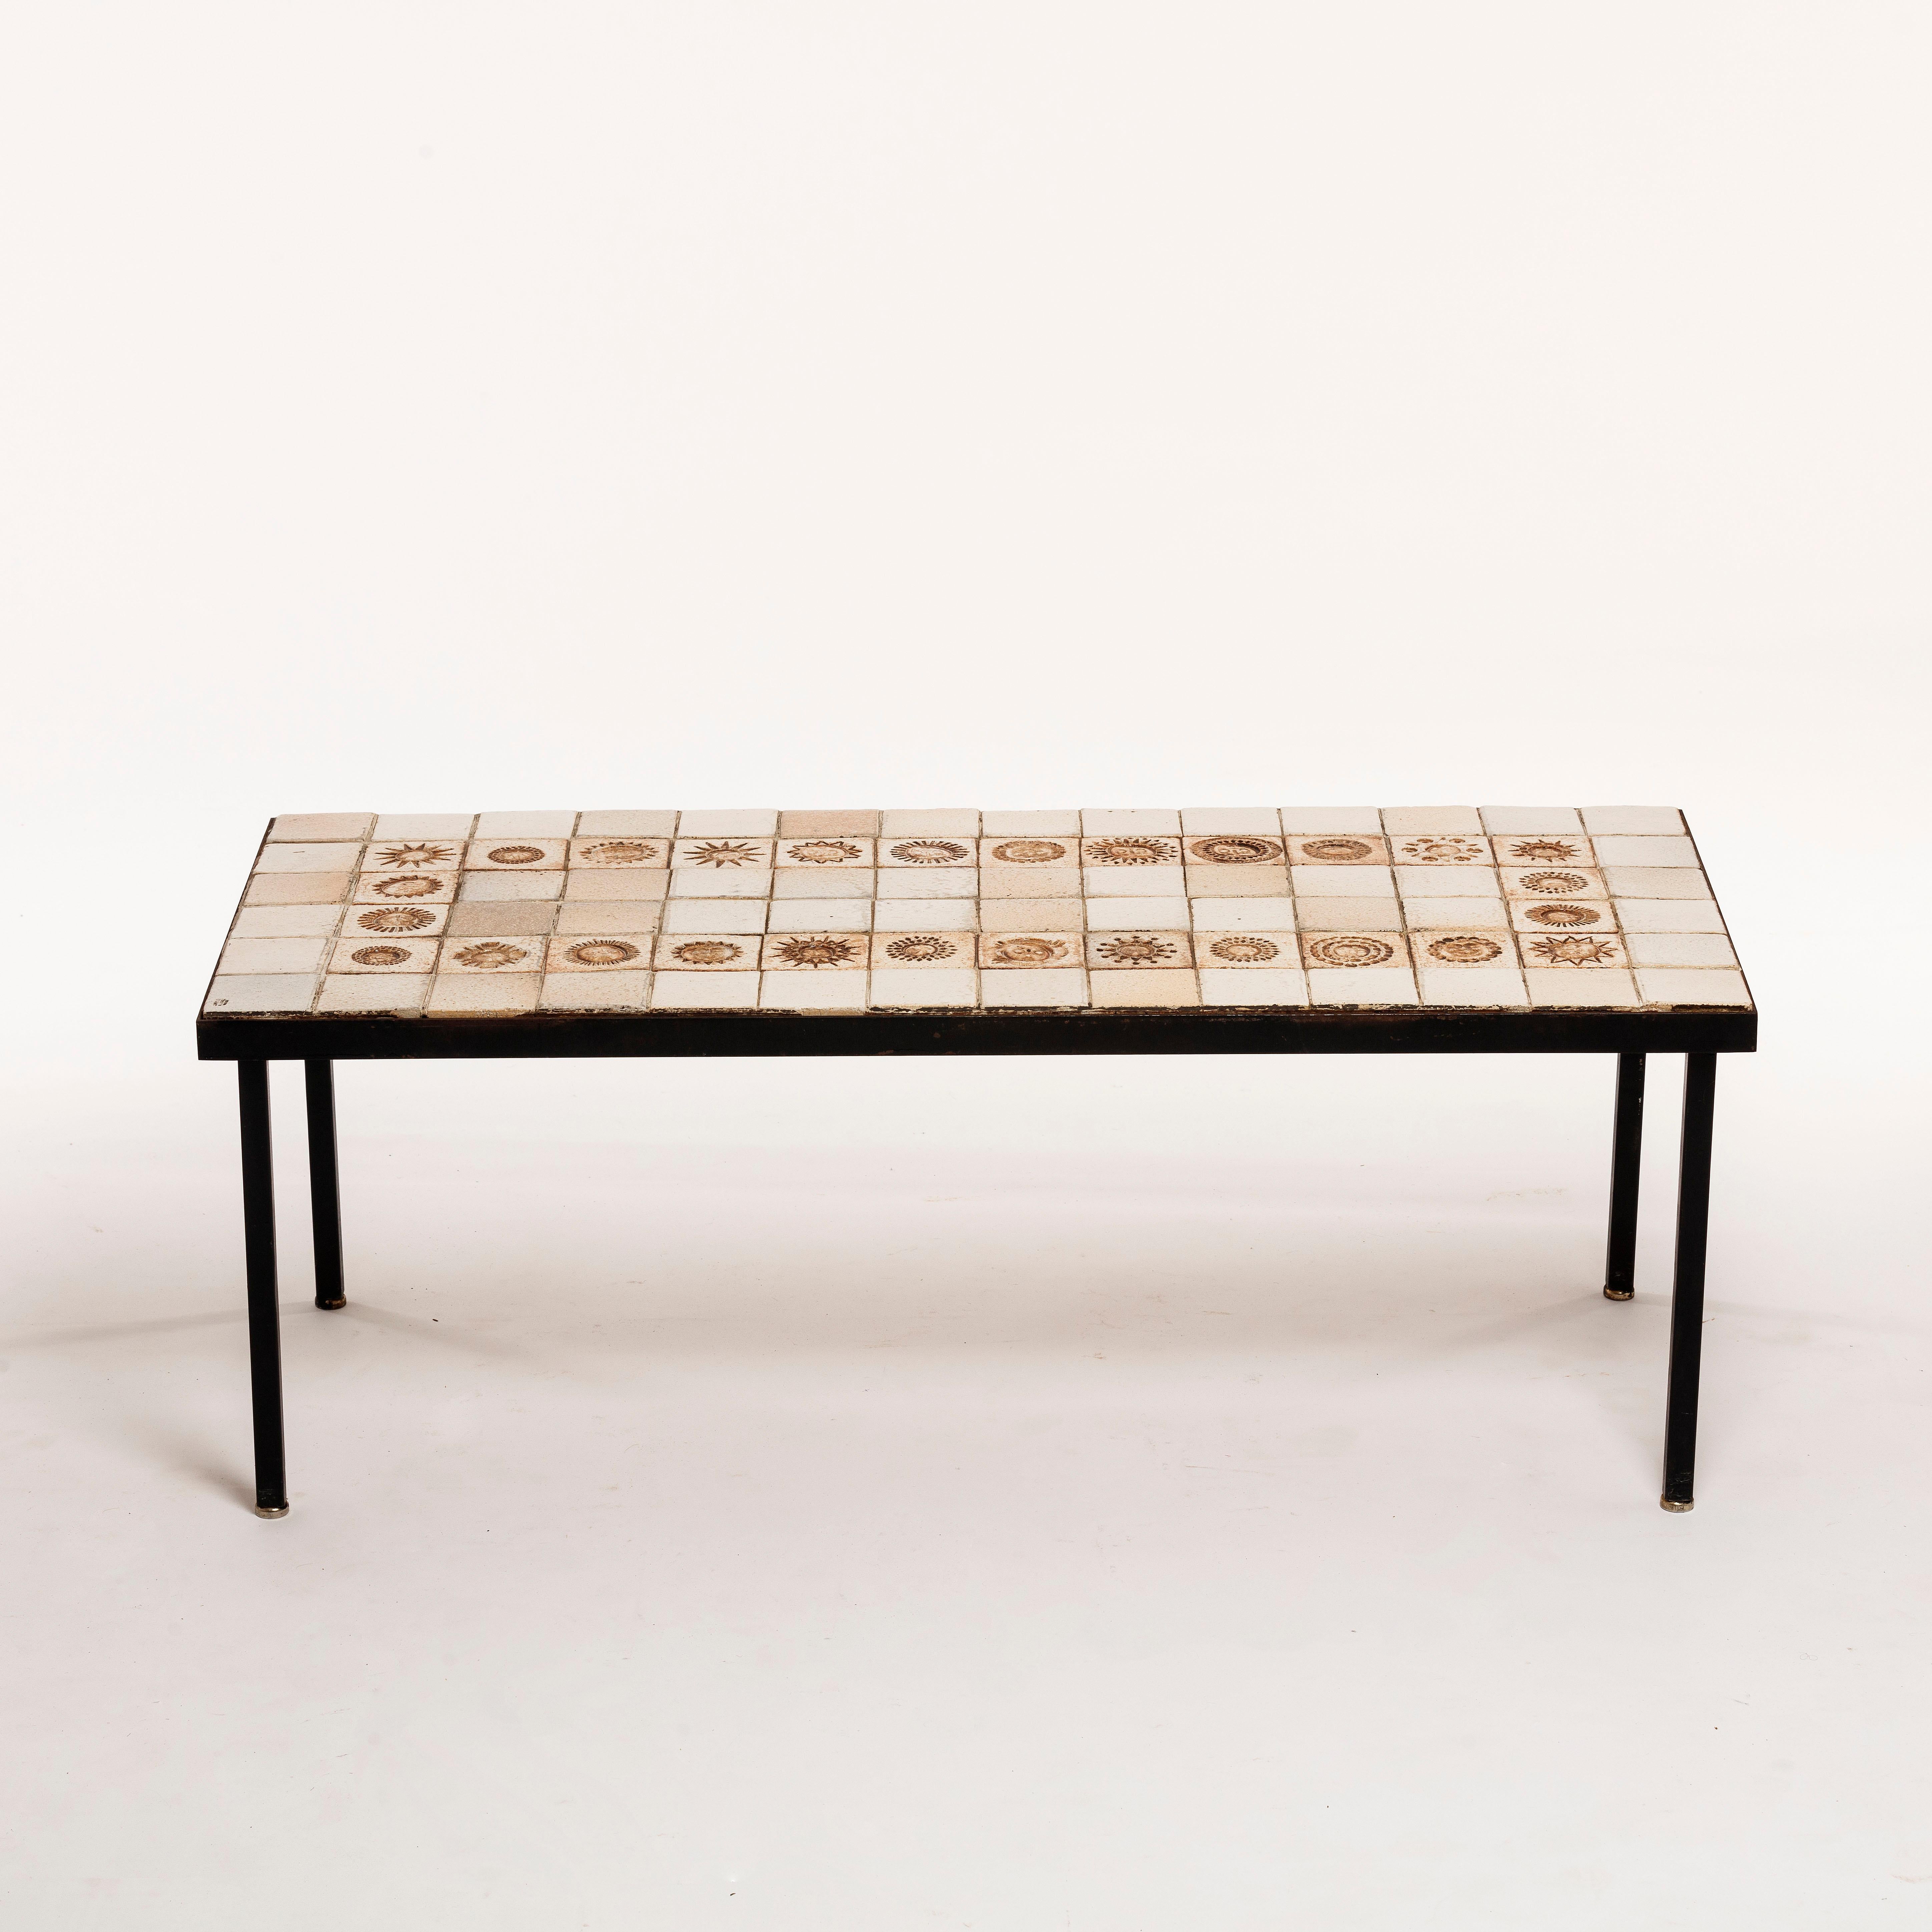 Très rare table basse en céramique du designer Roger Capron, années 1960. La structure est en métal noir et le dessus en variation blanche avec 26 petits soleils différents gravés sur des carreaux de céramique émaillée.

La table est signée et en